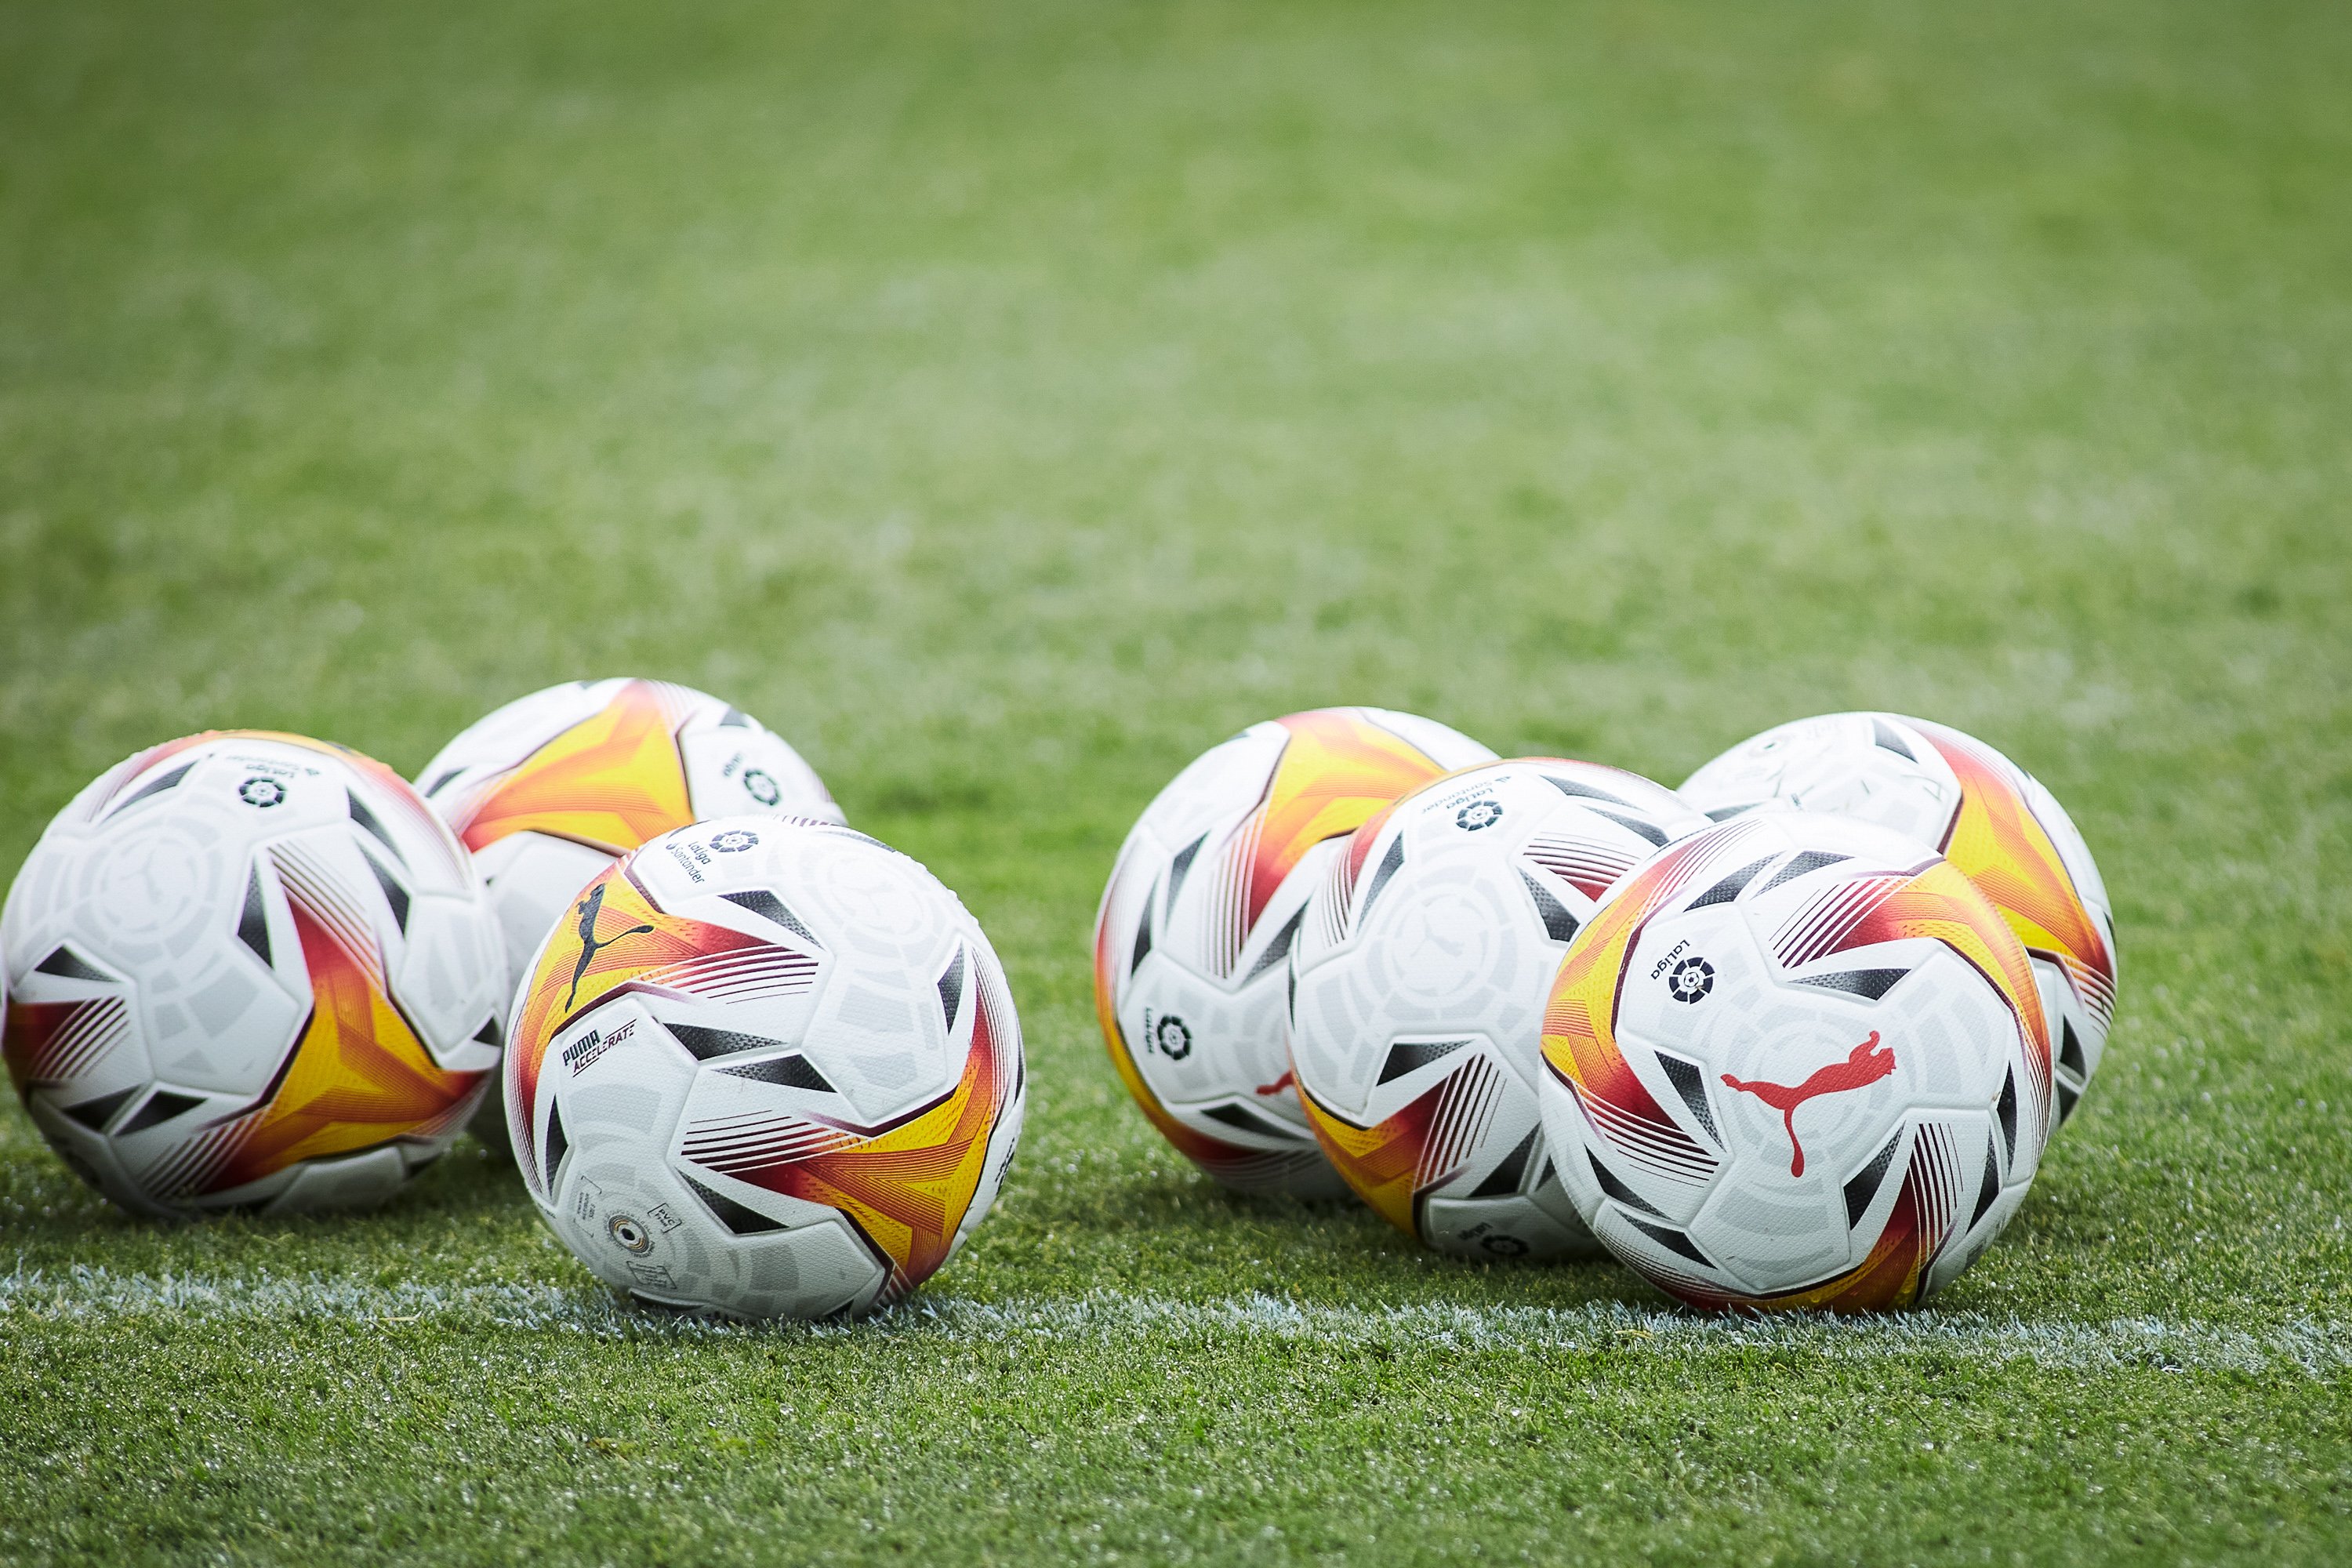 CVC assegura que l'acord amb LaLiga pretén "crear valor per al futbol español"